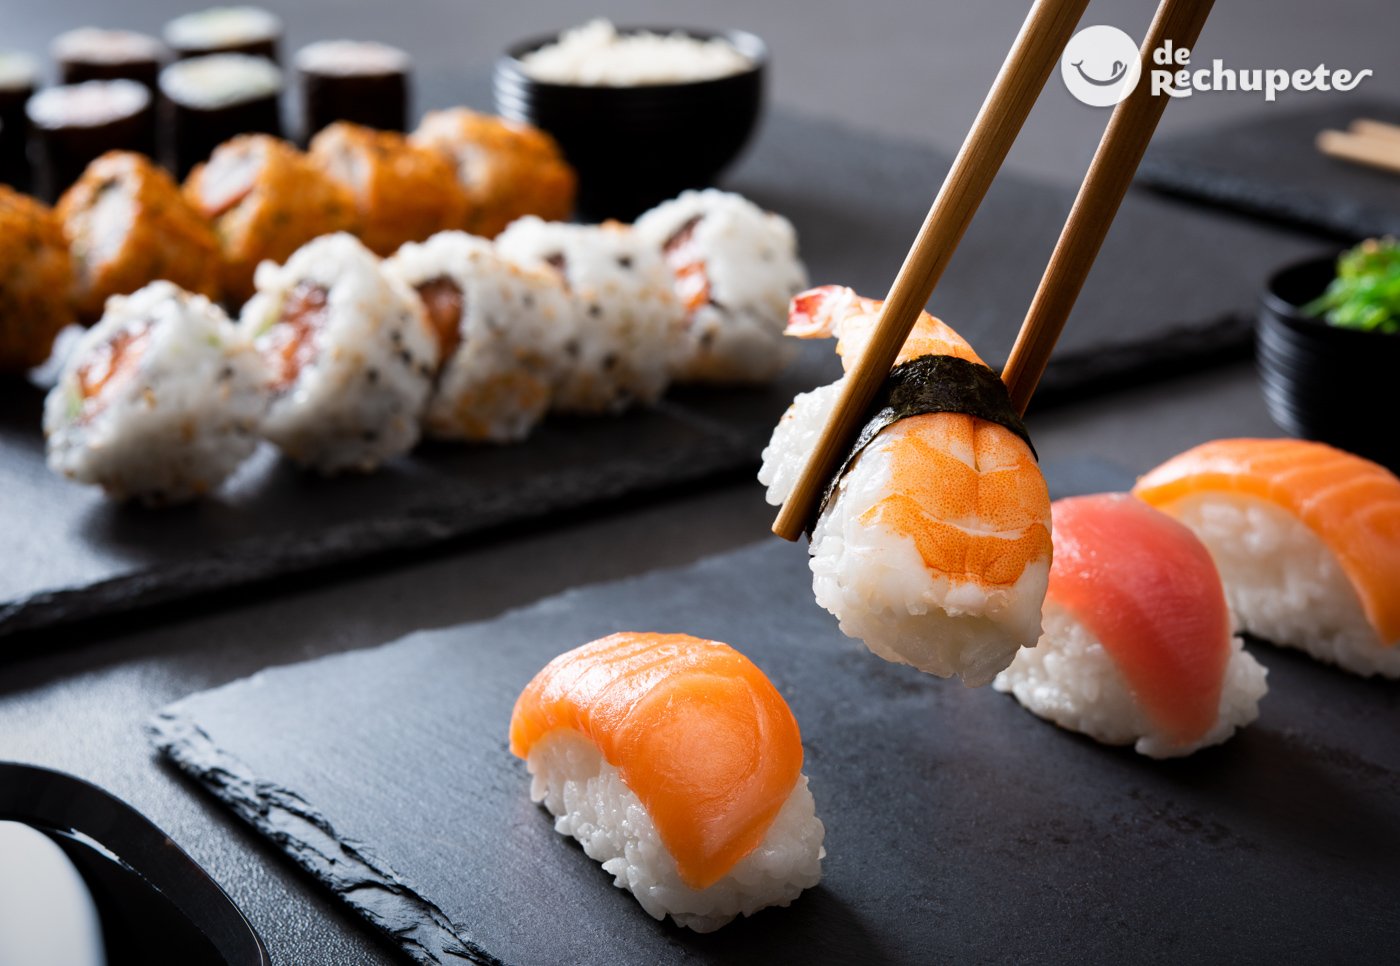 Contar Robar a Expectativa Sushi. Consejos para hacer sushi casero cómo un profesional. Tipos y recetas  - Recetas de rechupete